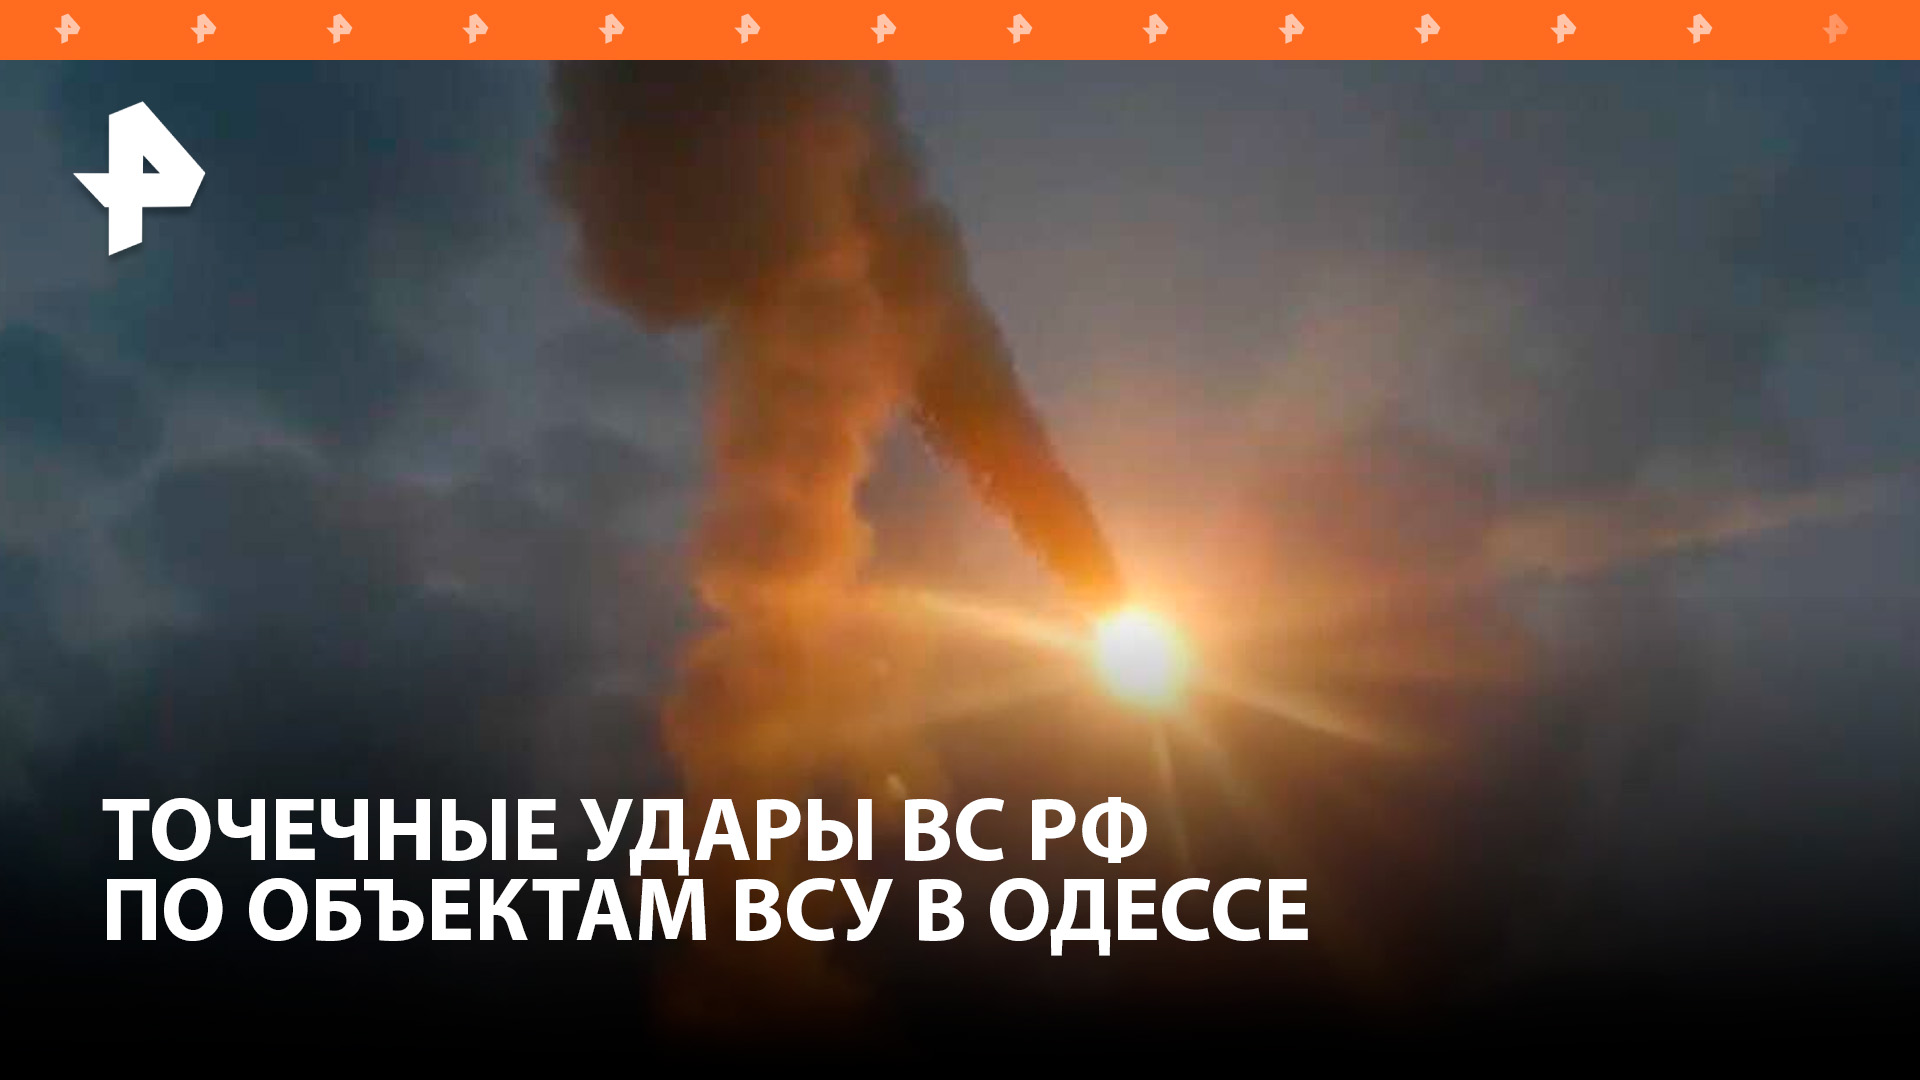 Часть Одессы оказалась обесточена после взрывов: точечные удары ВС РФ достигли цели / РЕН Новости